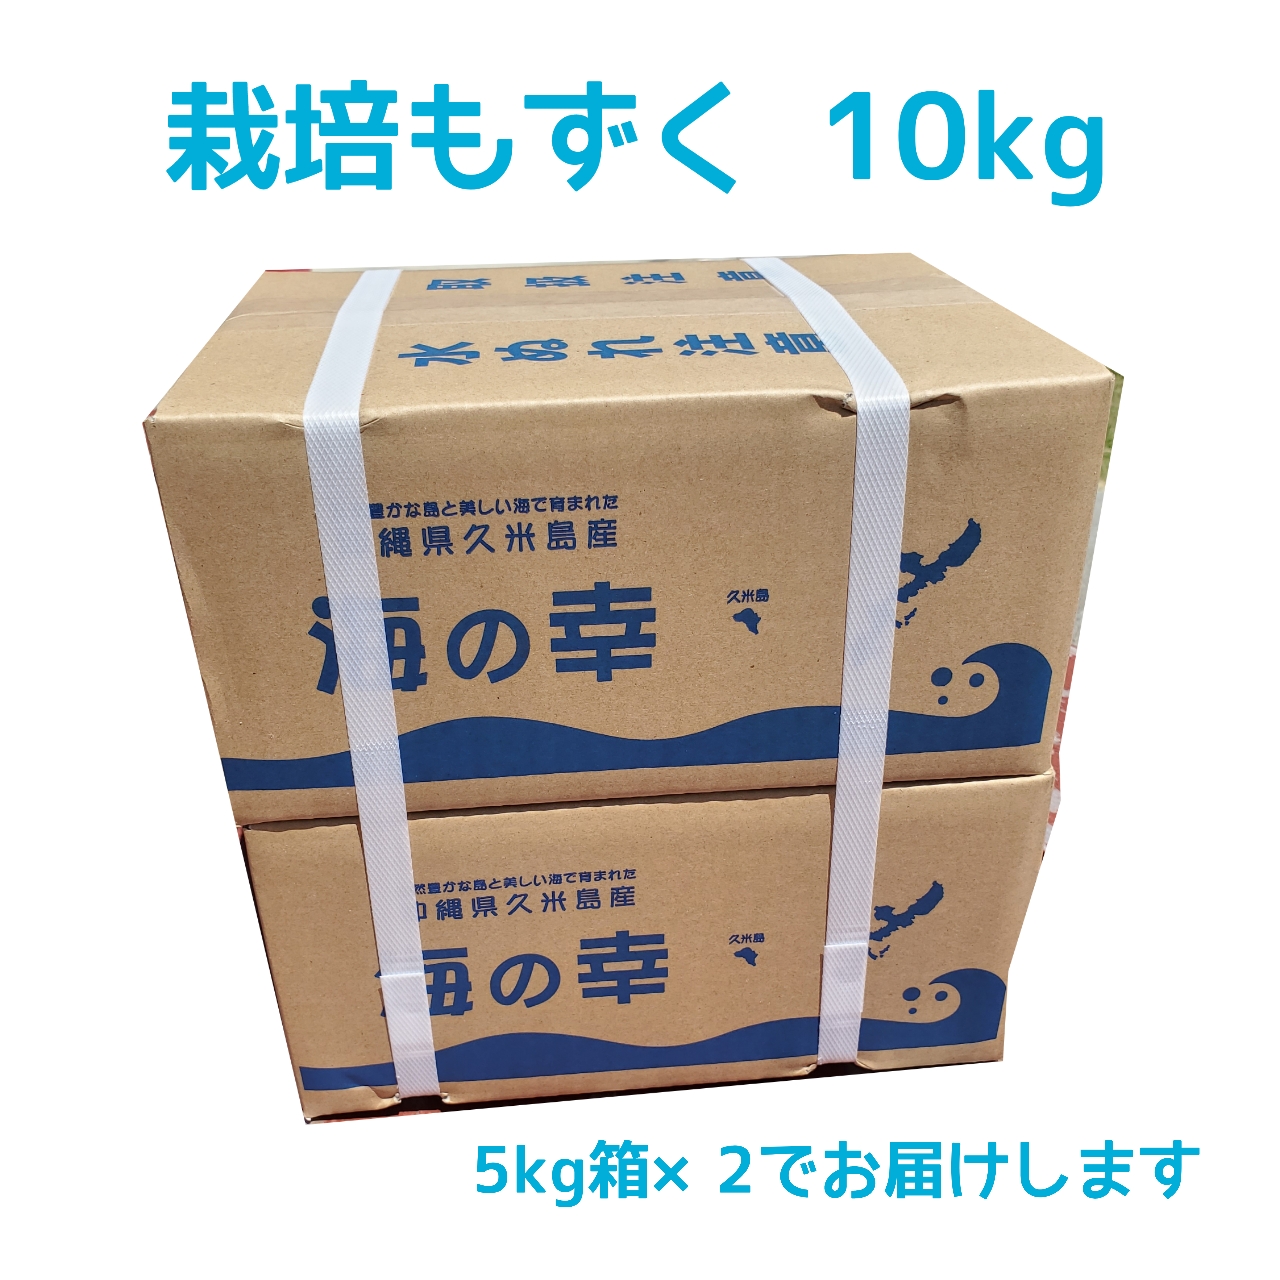 item_mozuku_saibai_10kg